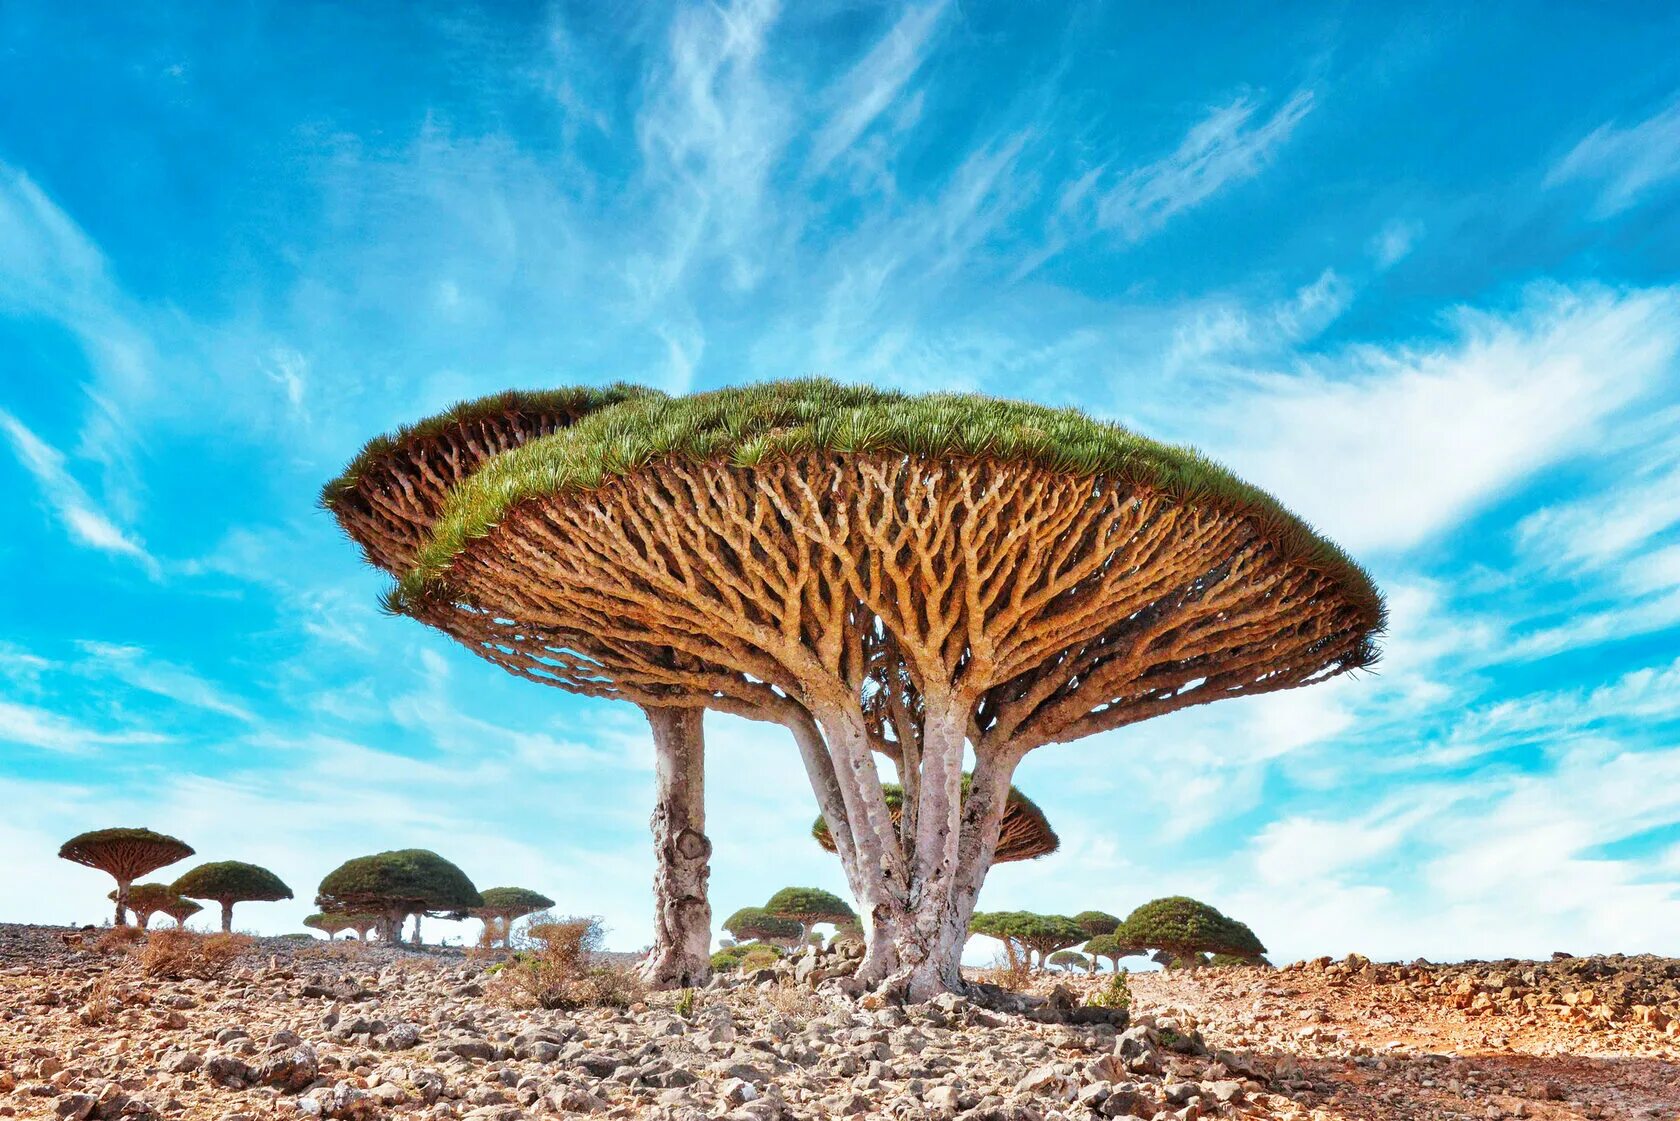 Драконово дерево где. Драконовое дерево Сокотра. Драконовые деревья на острове Сокотра. Архипелаг Сокотра Йемен. Деревья острова Сокотра Йемен.